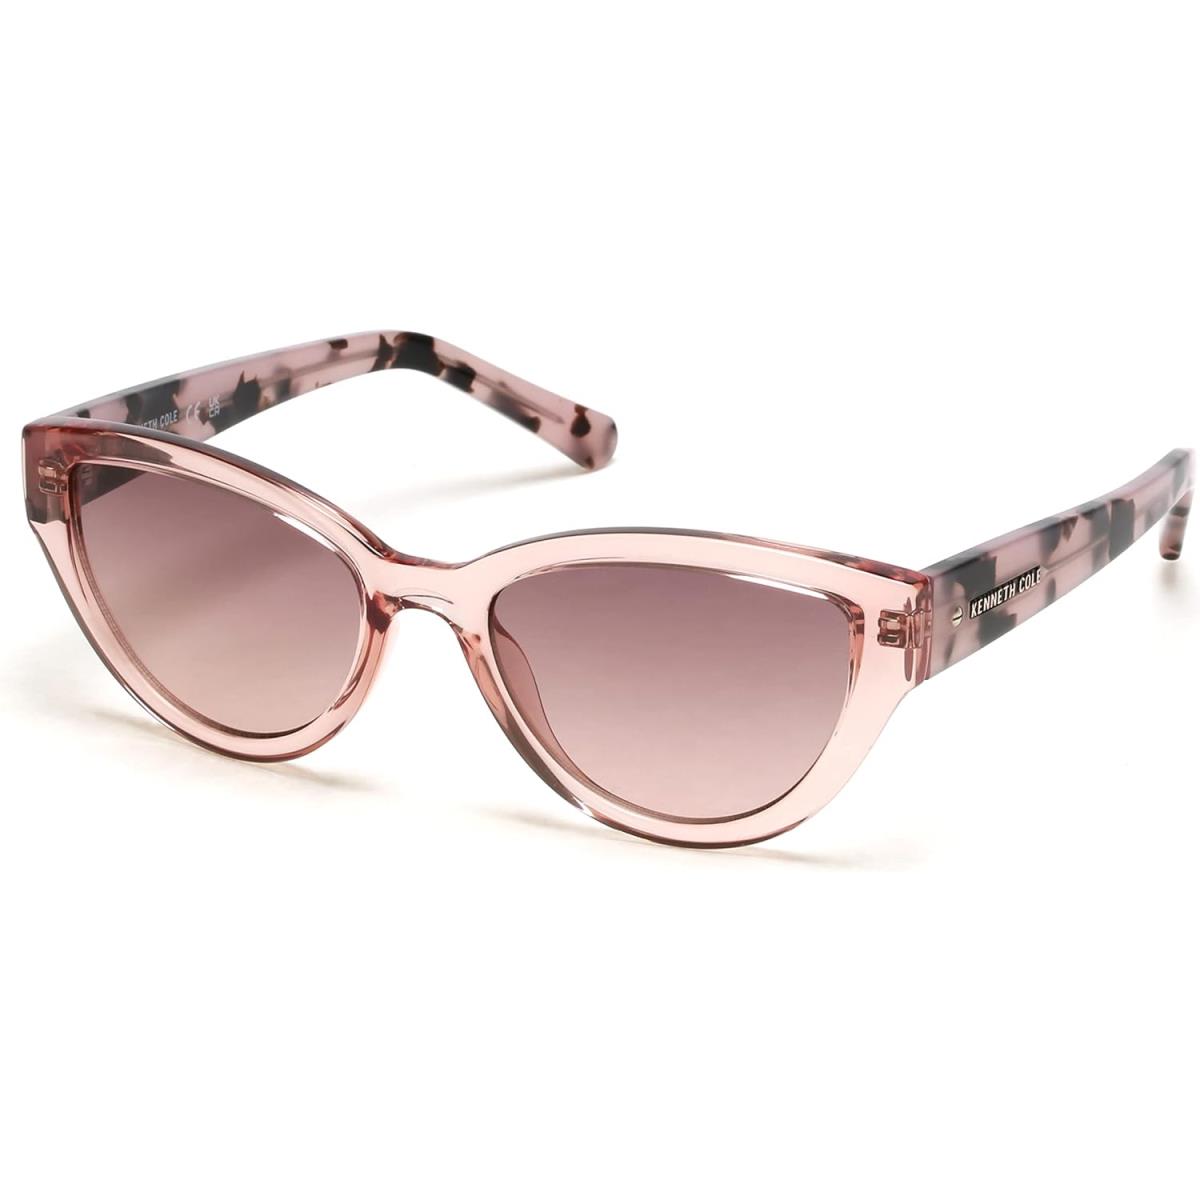 Kenneth Cole Women`s Cat Sunglasses Shiny Pink / Gradient Bordeaux